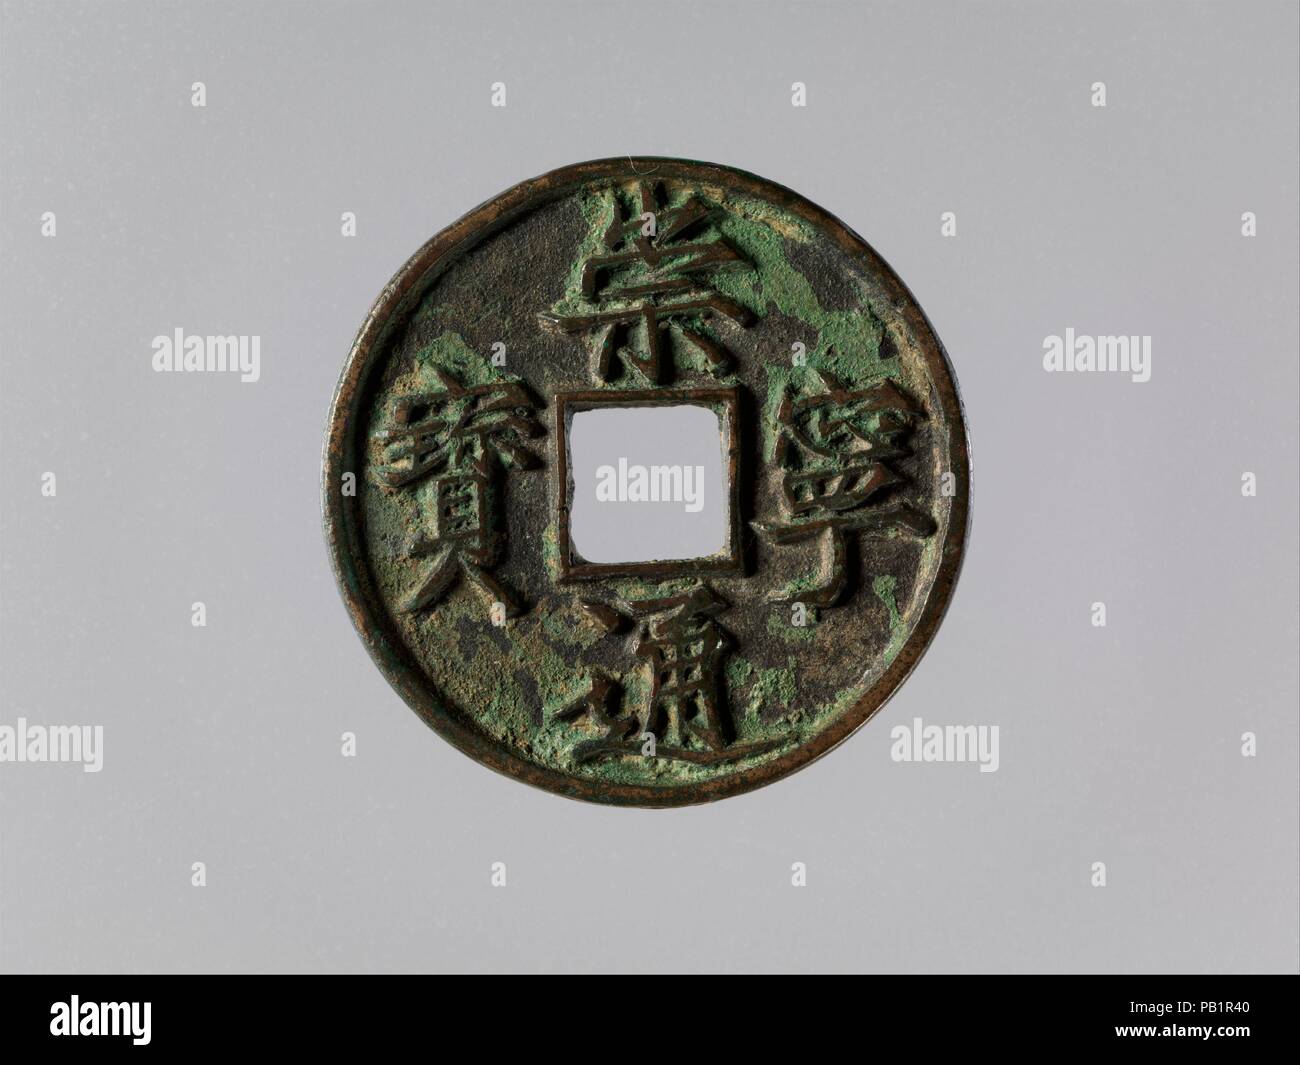 Münze mit Inschrift Chong Ning Tong Bao. Kultur: China. Abmessungen: Durchm. 1 3/8 in. (3,5 cm). Datum: 1102-06. Diese Münze ist rund mit einer quadratischen Öffnung. Er entspricht der Form der chinesischen Münzen, die zuerst in den frühen siebten Jahrhundert entwickelt und weiterhin gut ins 19. Die vier Zeichen Inschrift lautet Chong ning Tong Bao, etwa "zirkulierenden Schätze der Chongning Ära." Dies ist der Name, der auf den Zeitraum von 1102 zu 1106 von Huizong (r. 1101-1125), der letzte Kaiser der Nördlichen Song Dynastie (960-1127). Museum: Metropolitan Museum of Art, New York, USA. Stockfoto